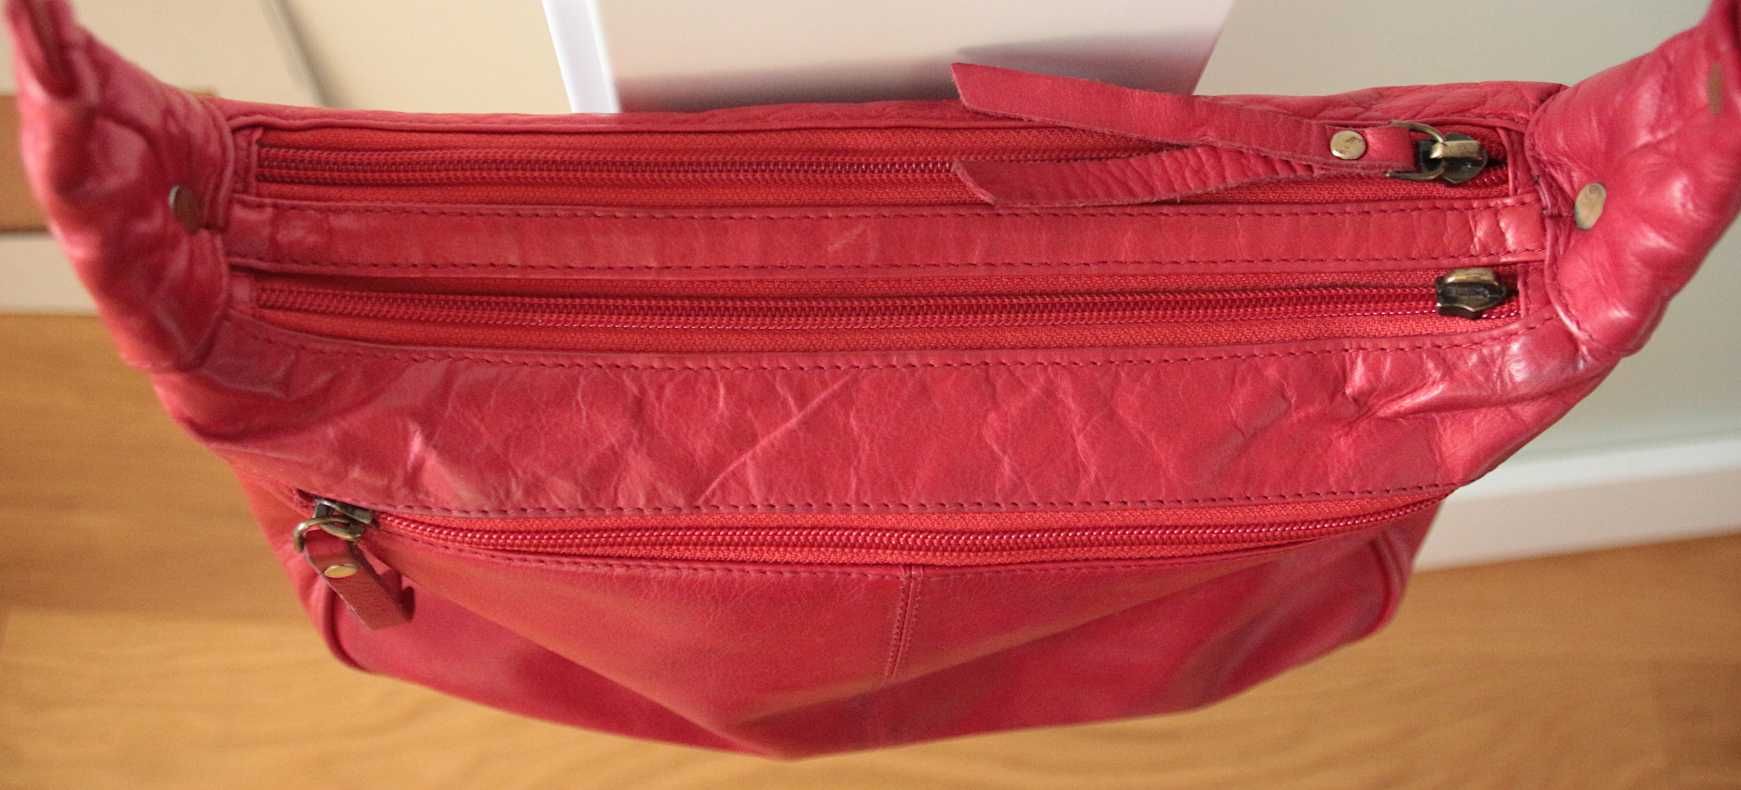 mała czerwona torebka Gigi